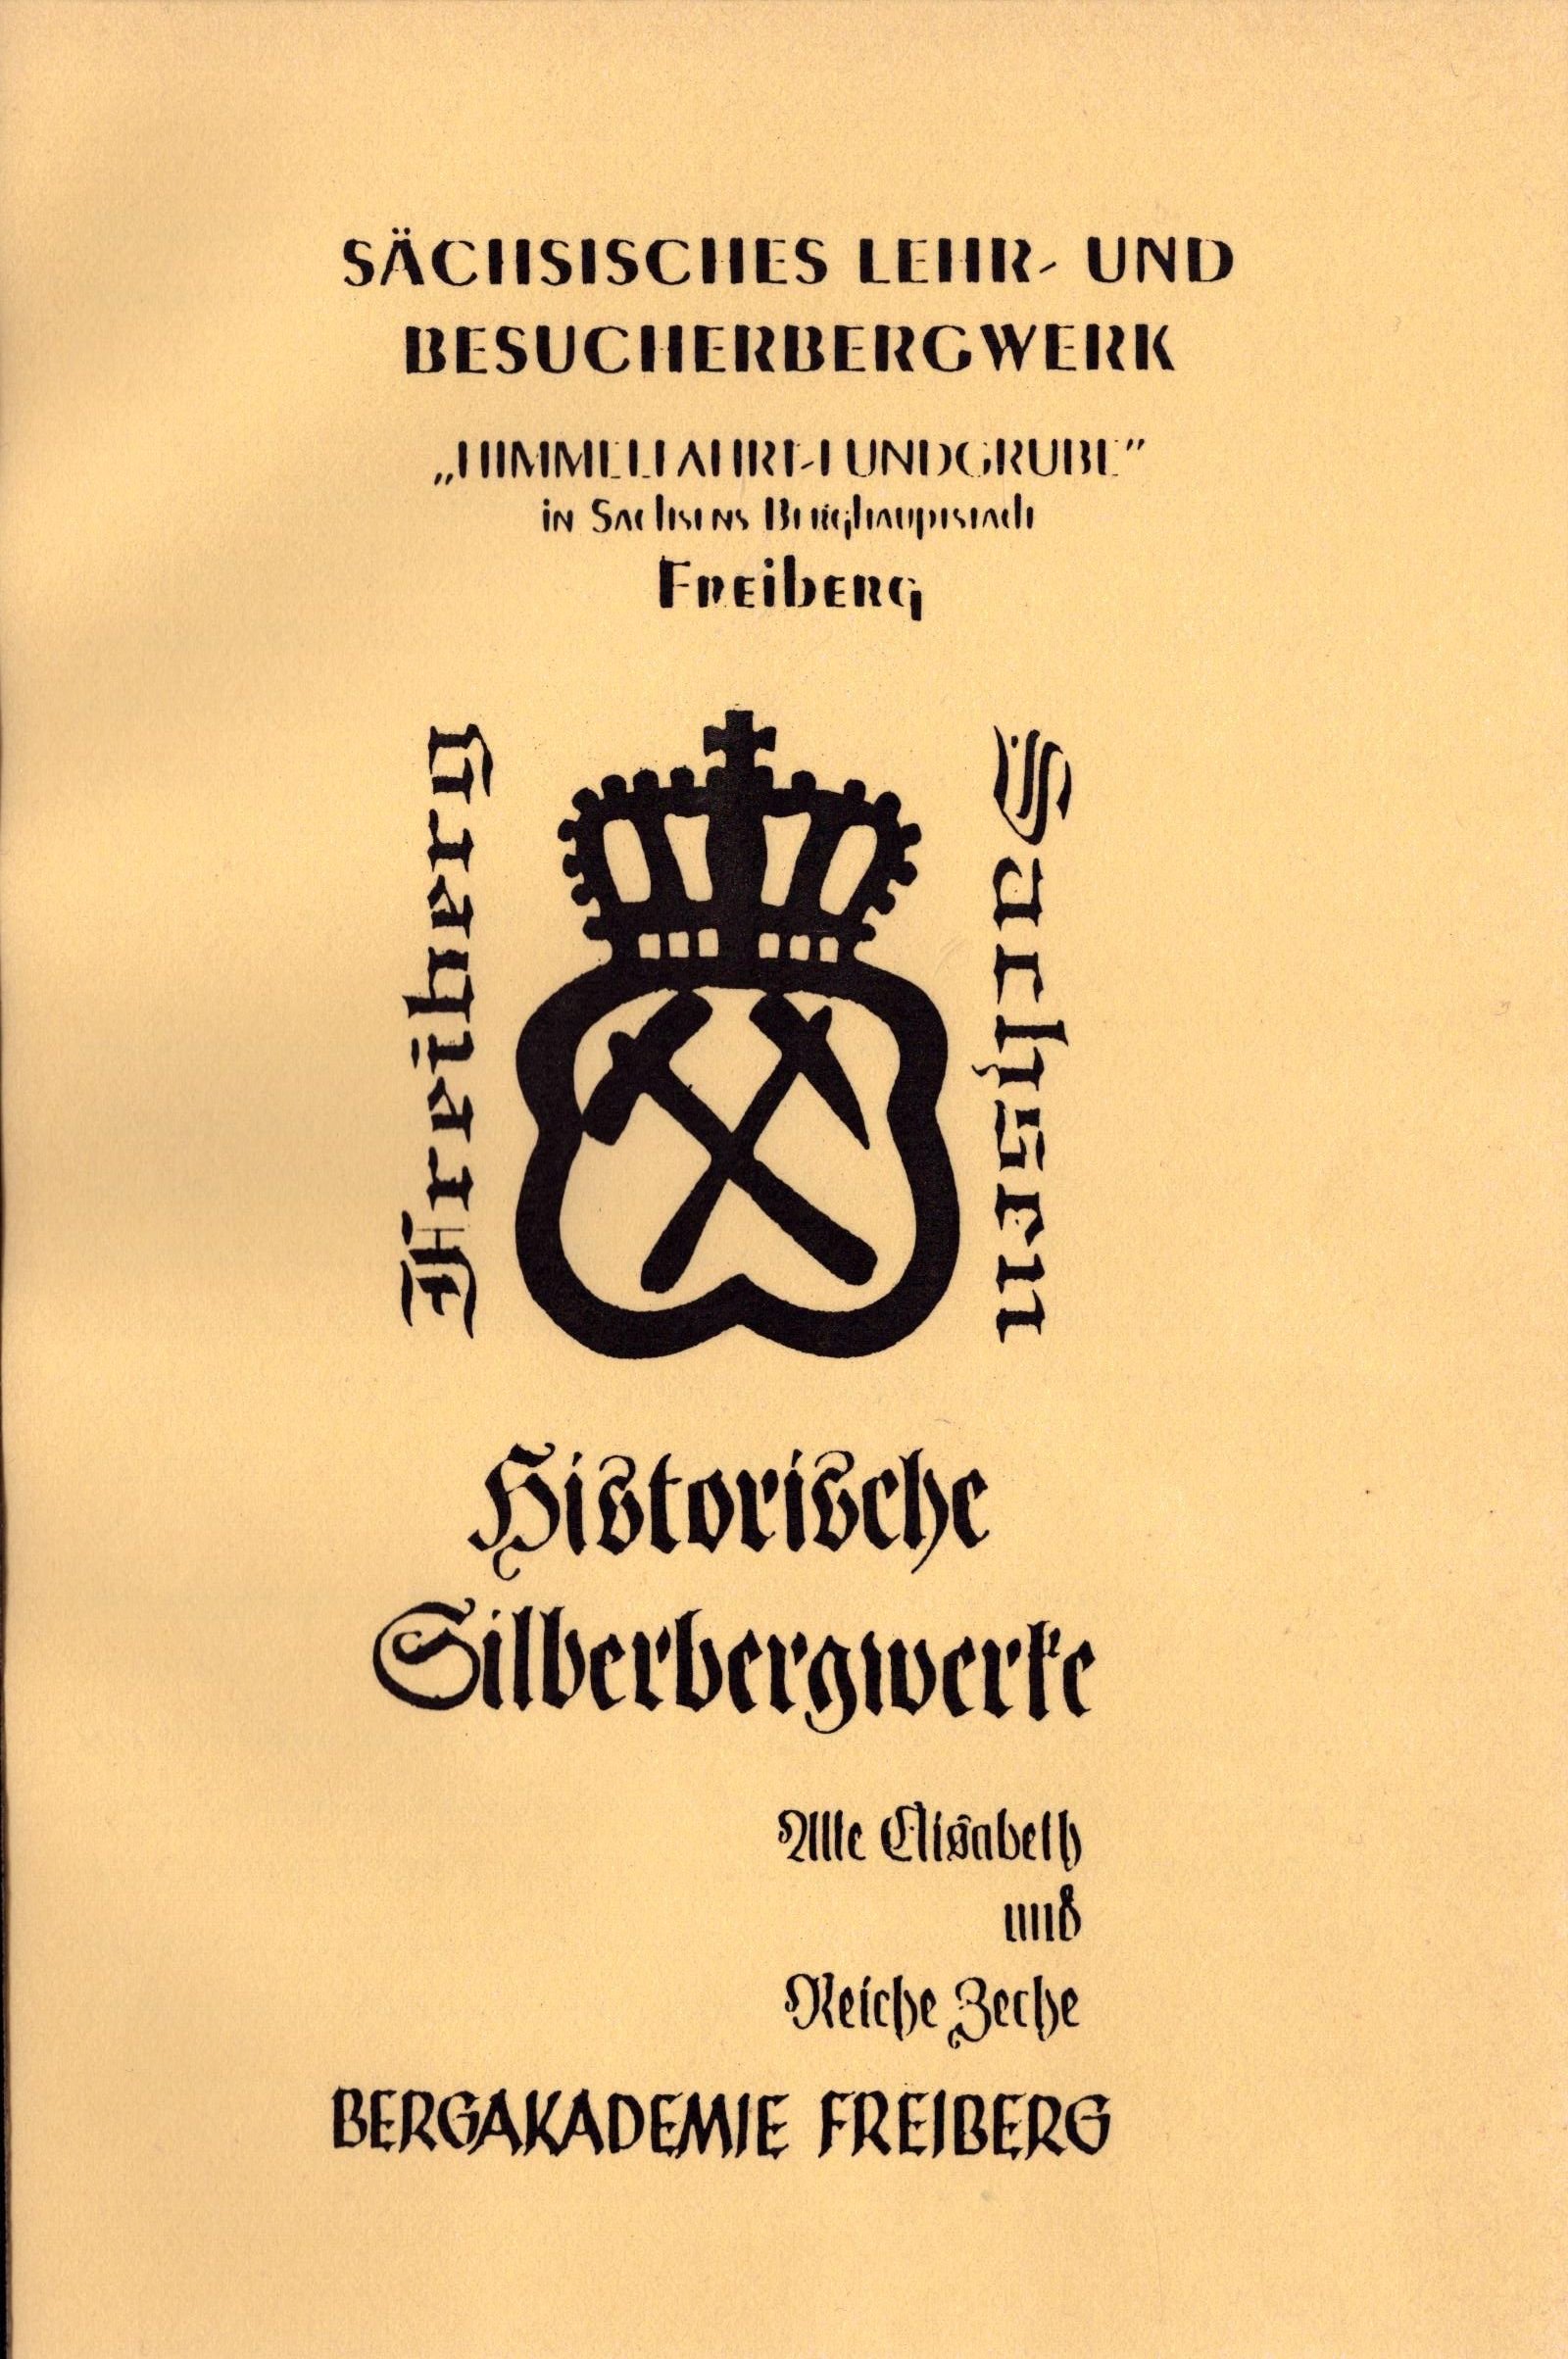 Sächsisches Lehr- und Besucherbergwerk "Himmelfahrt-Fundgrube" (Archiv SAXONIA-FREIBERG-STIFTUNG CC BY-NC-SA)